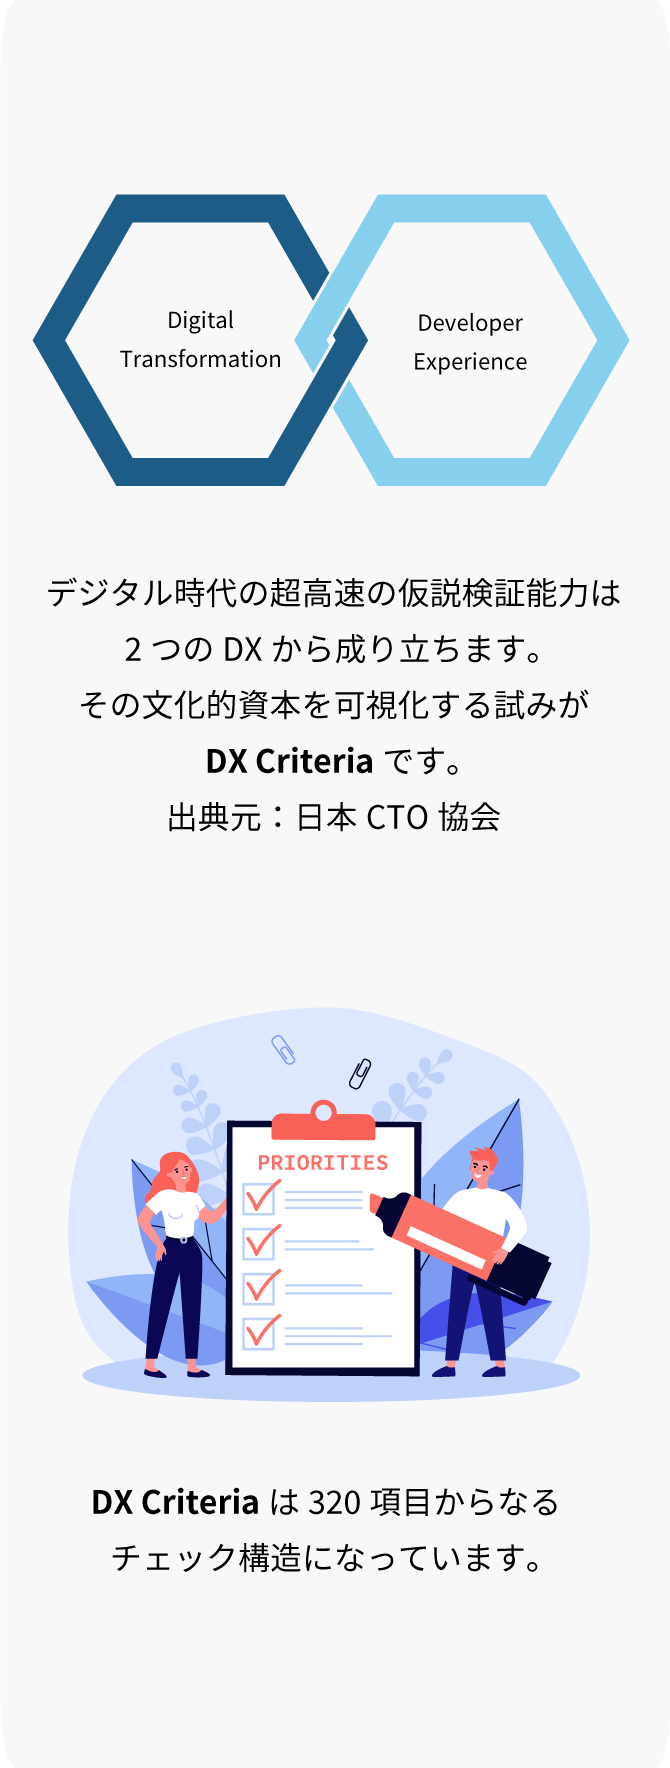 DX Criteria